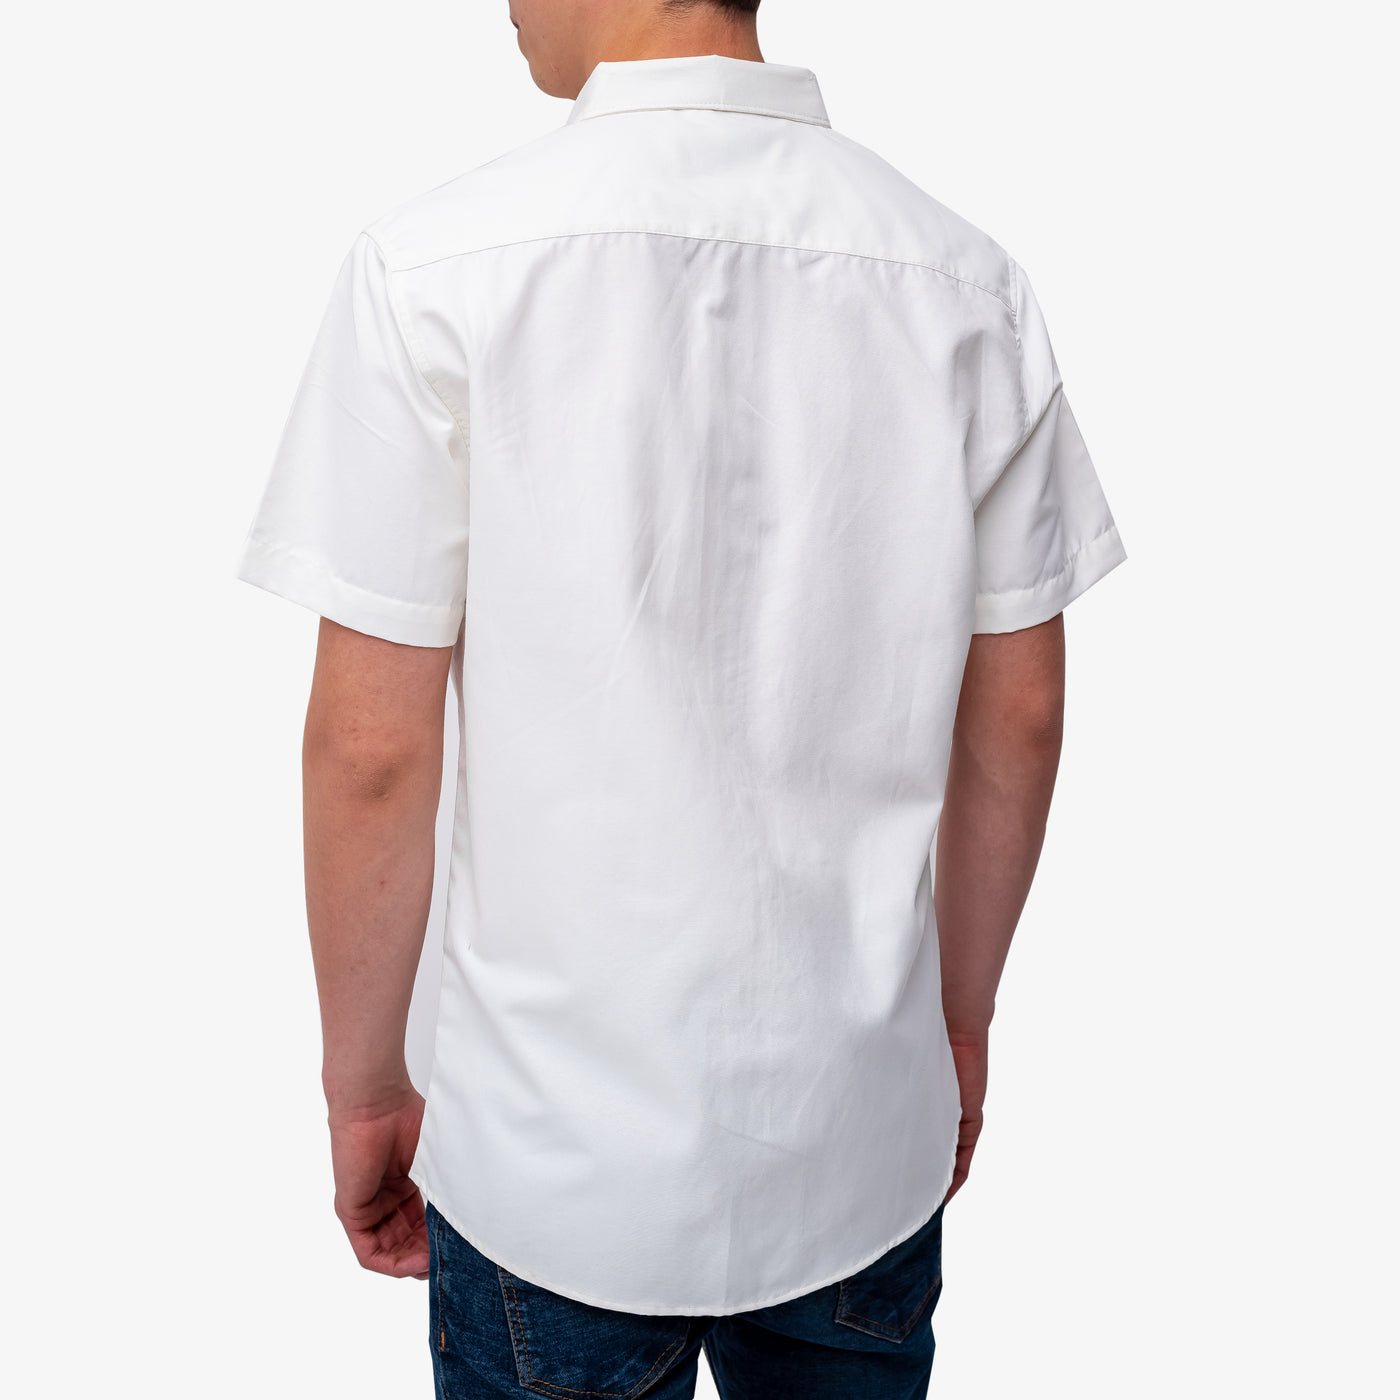 Camisa manga corta cuello normal - blanco hueso